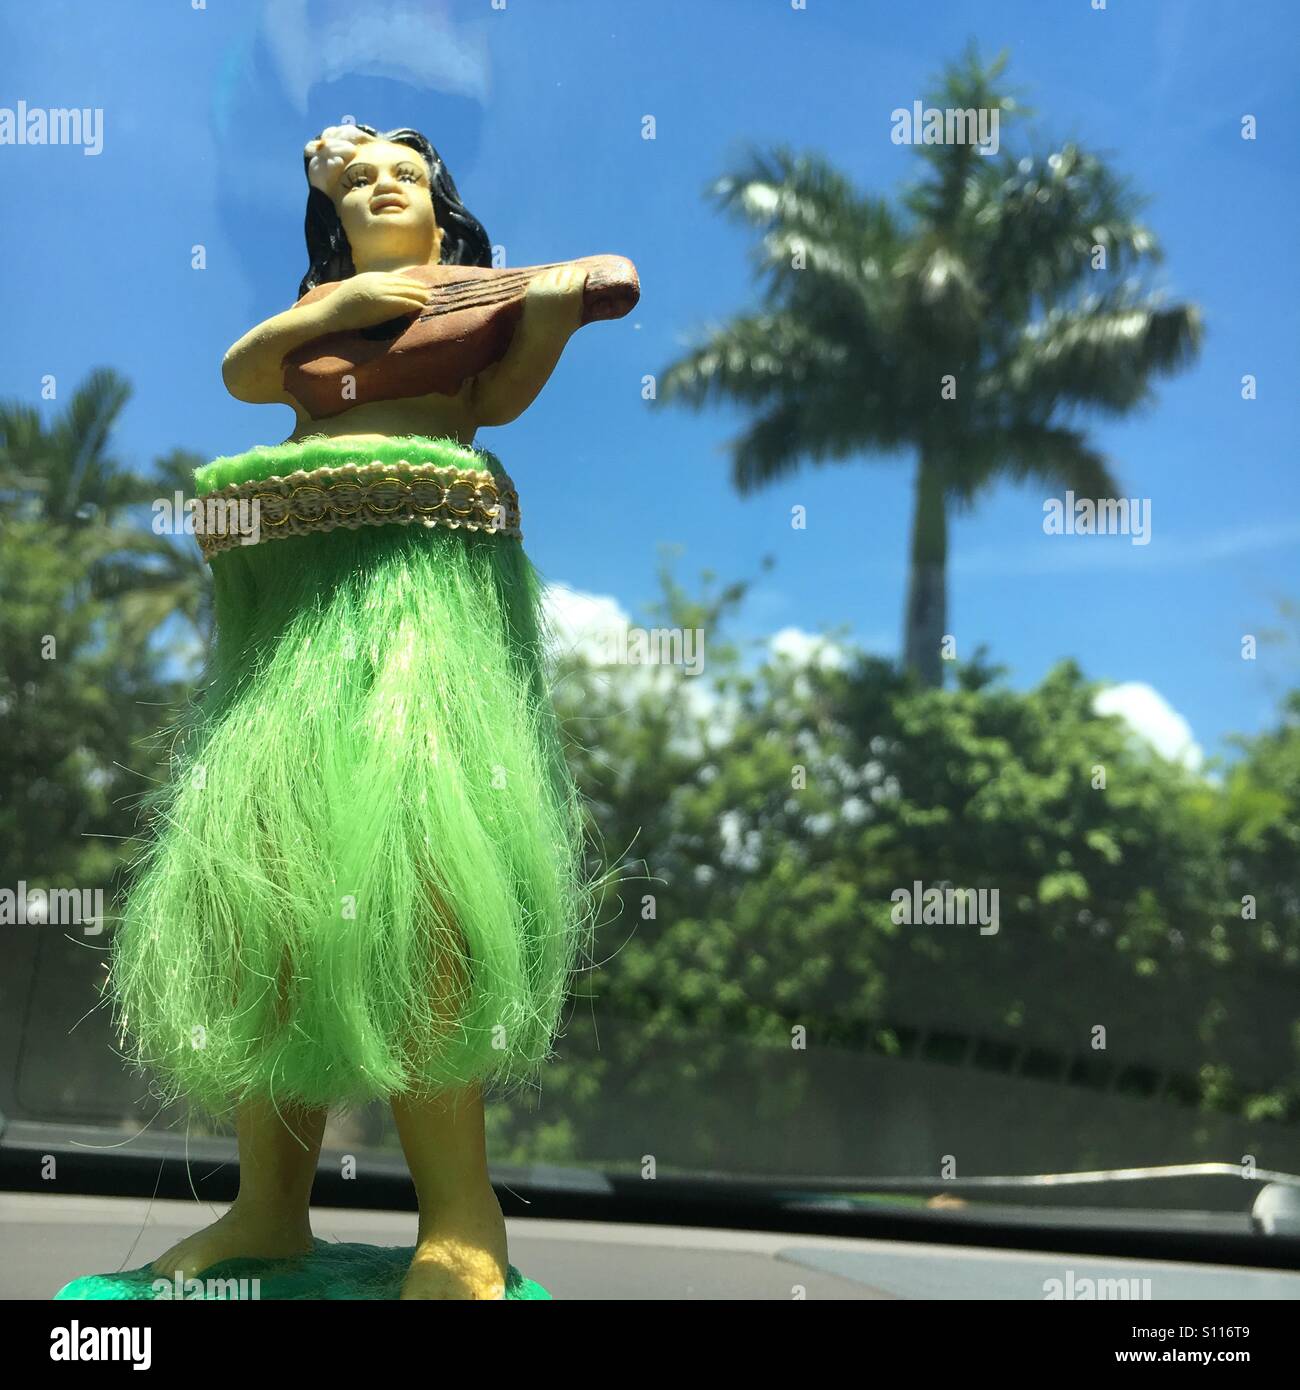 Hawaii Hula Doll President Donald Trump w/ Surfboard Car Dashboard 4" #40598 